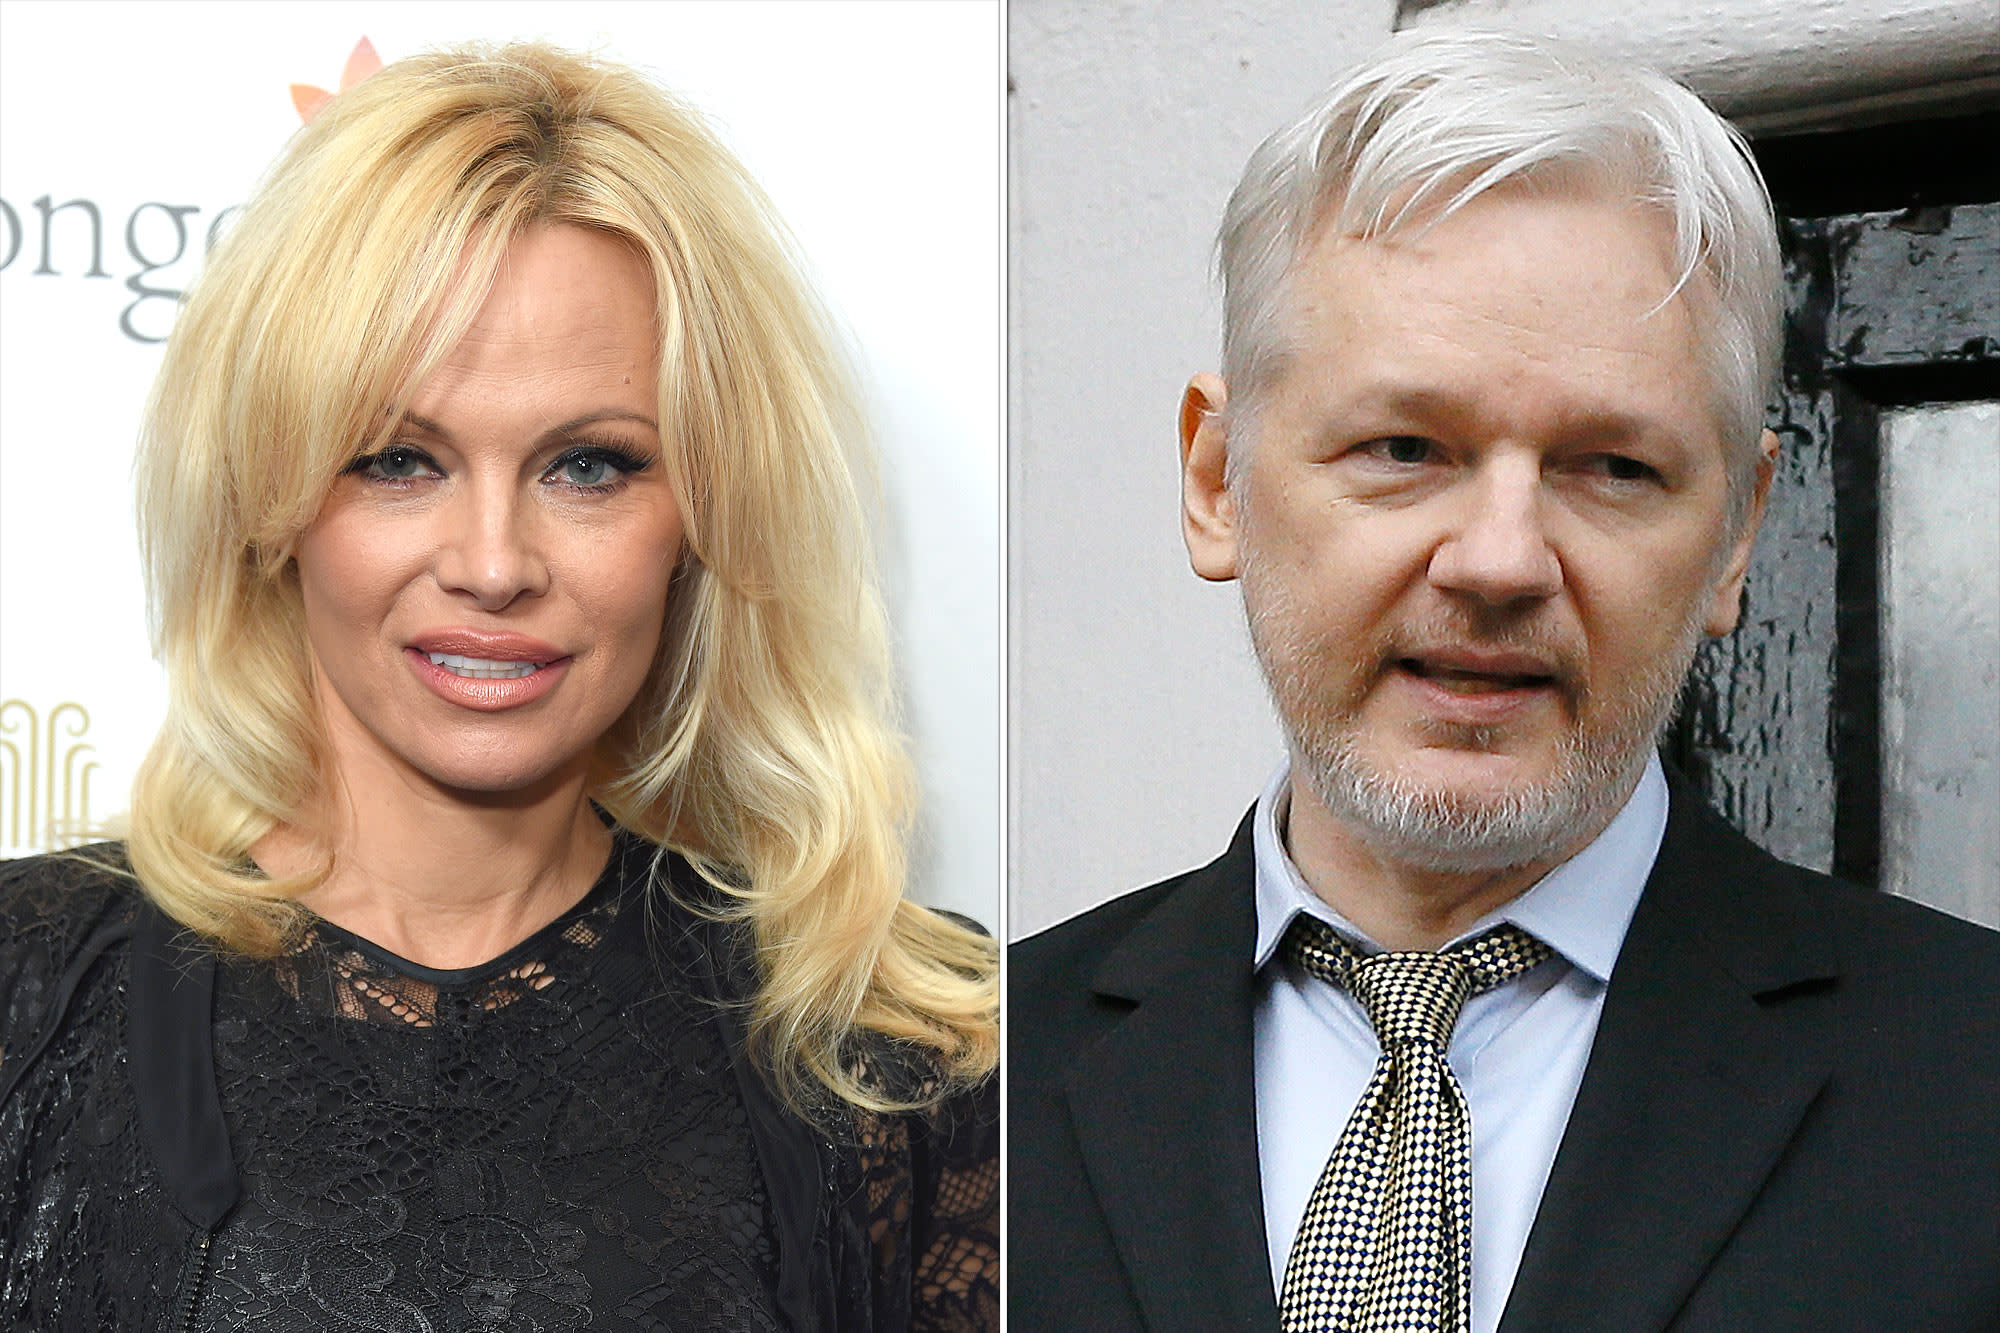 Is Pamela Anderson Dating WikiLeaks Founder Julian Assange?